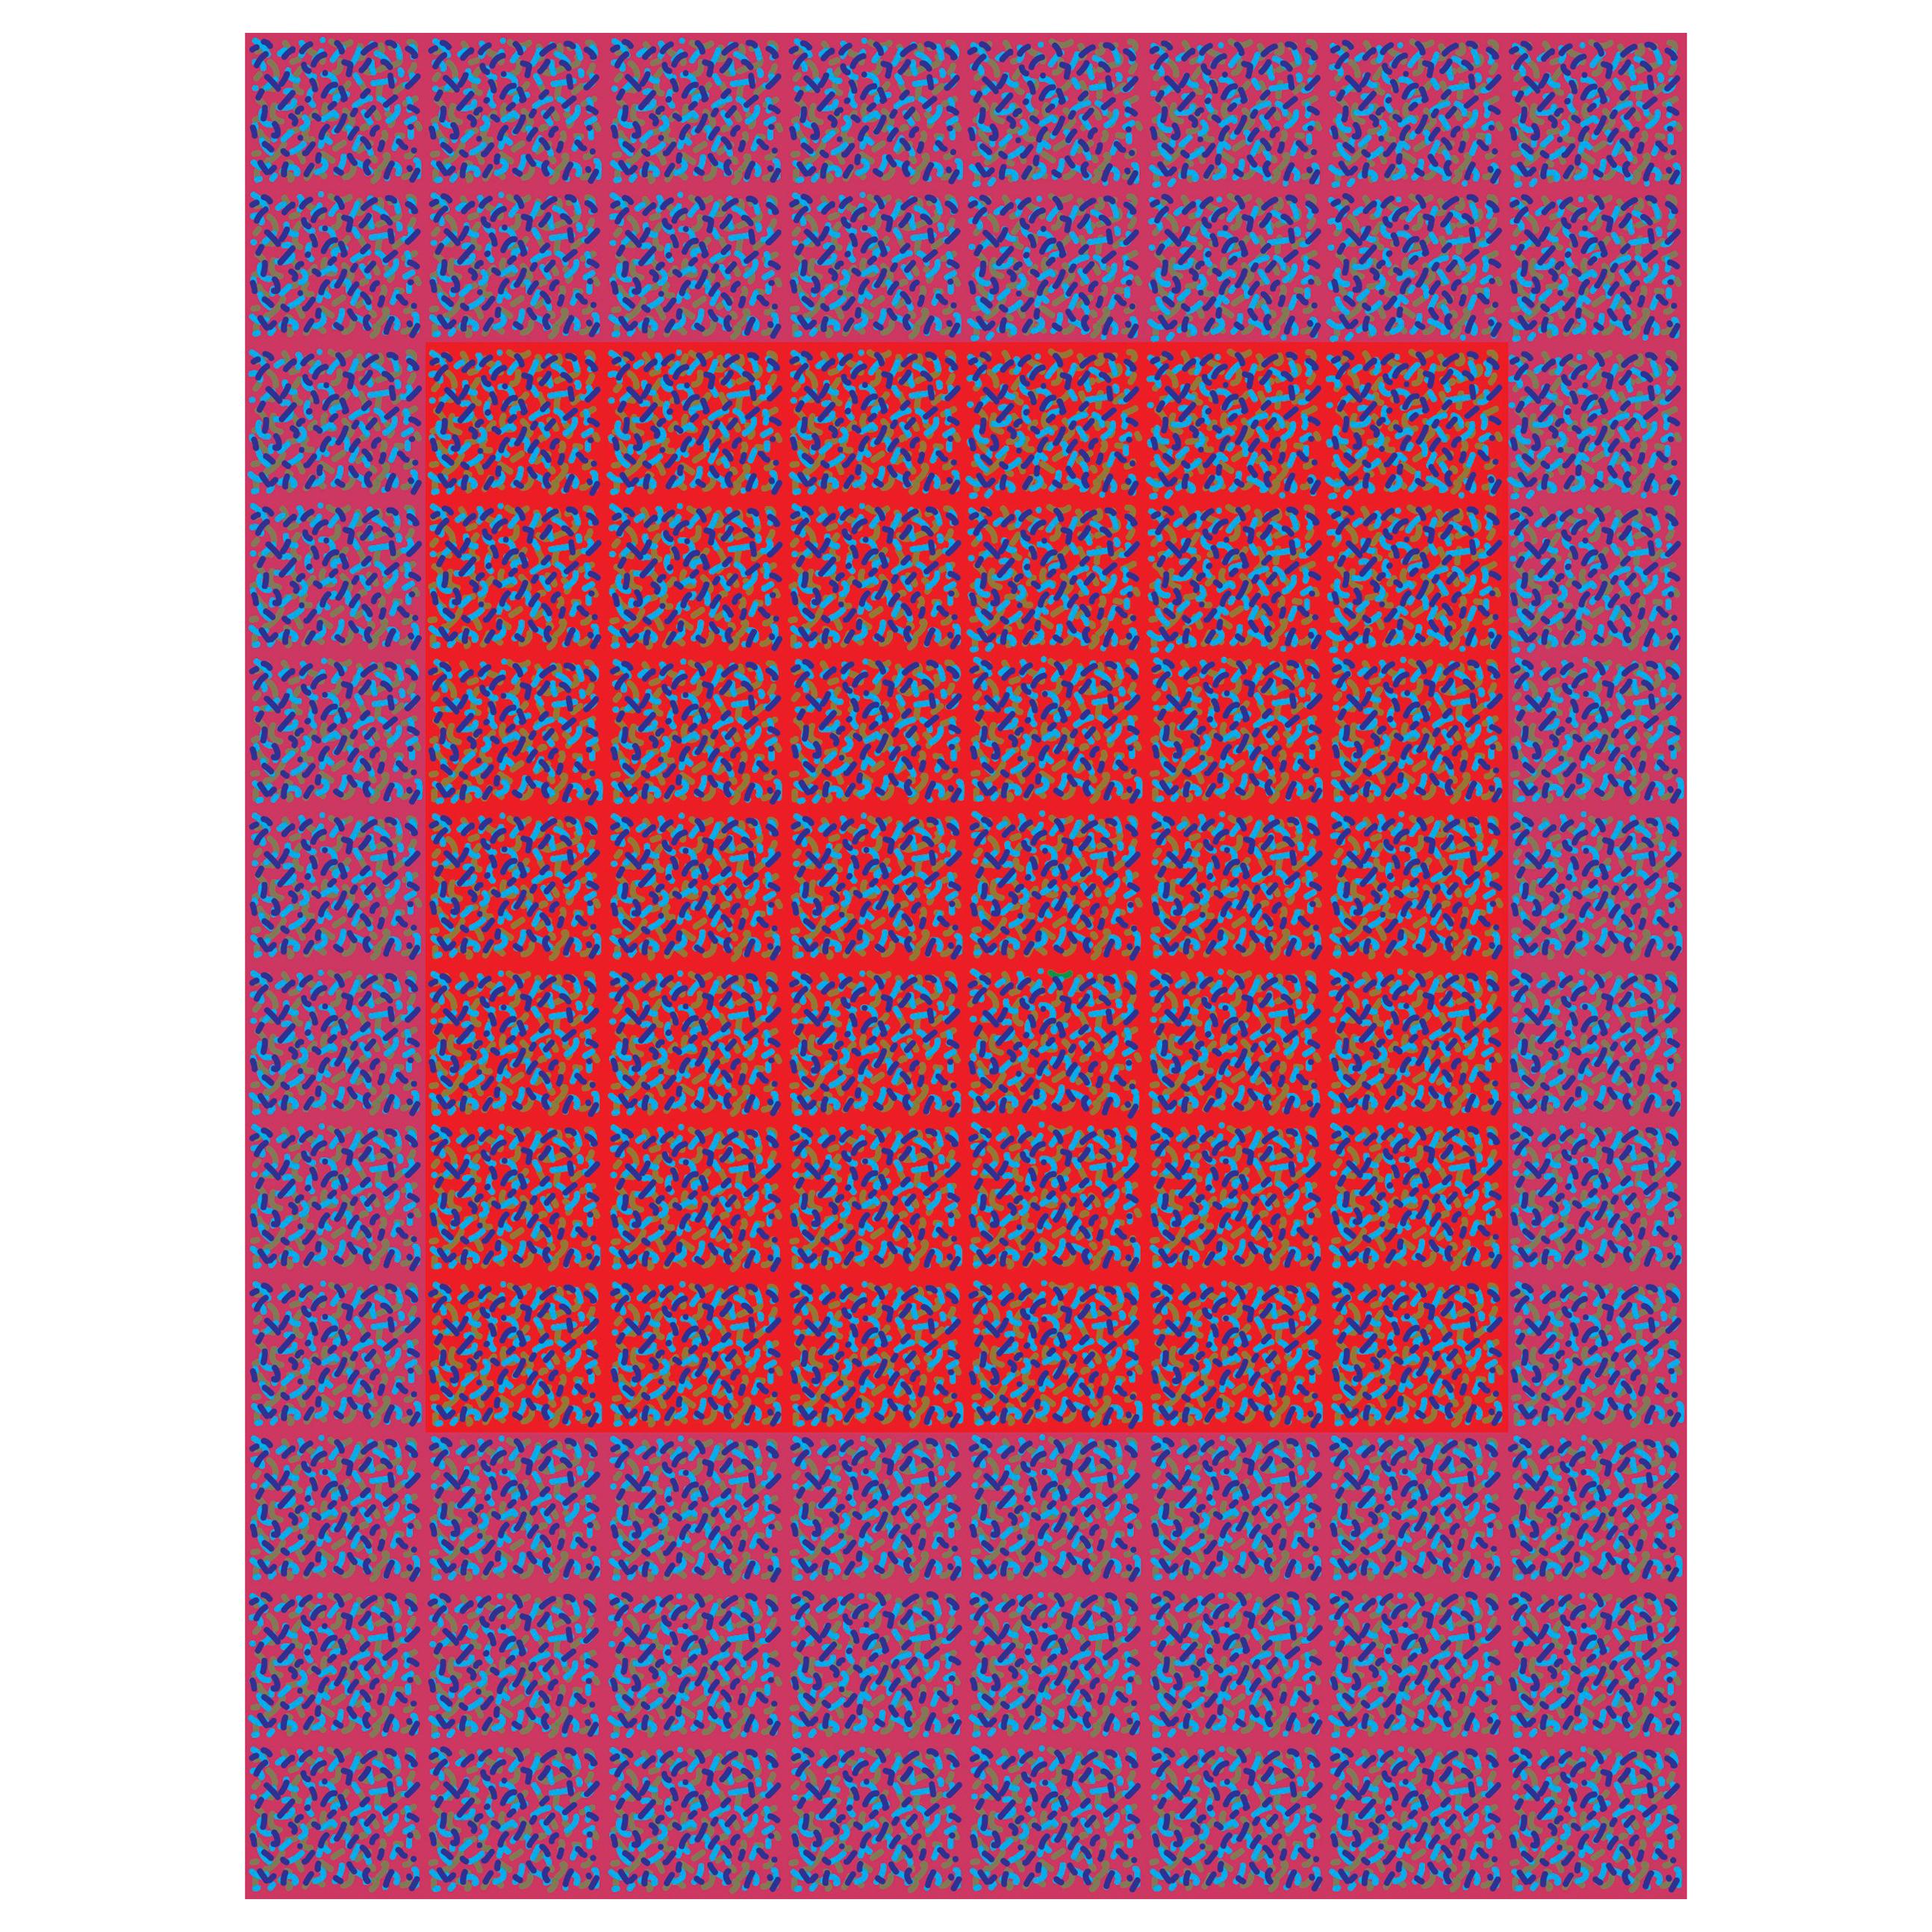 Michael Zenreich Conceptual Abstract Digital Print "Confetti Red Square V2"